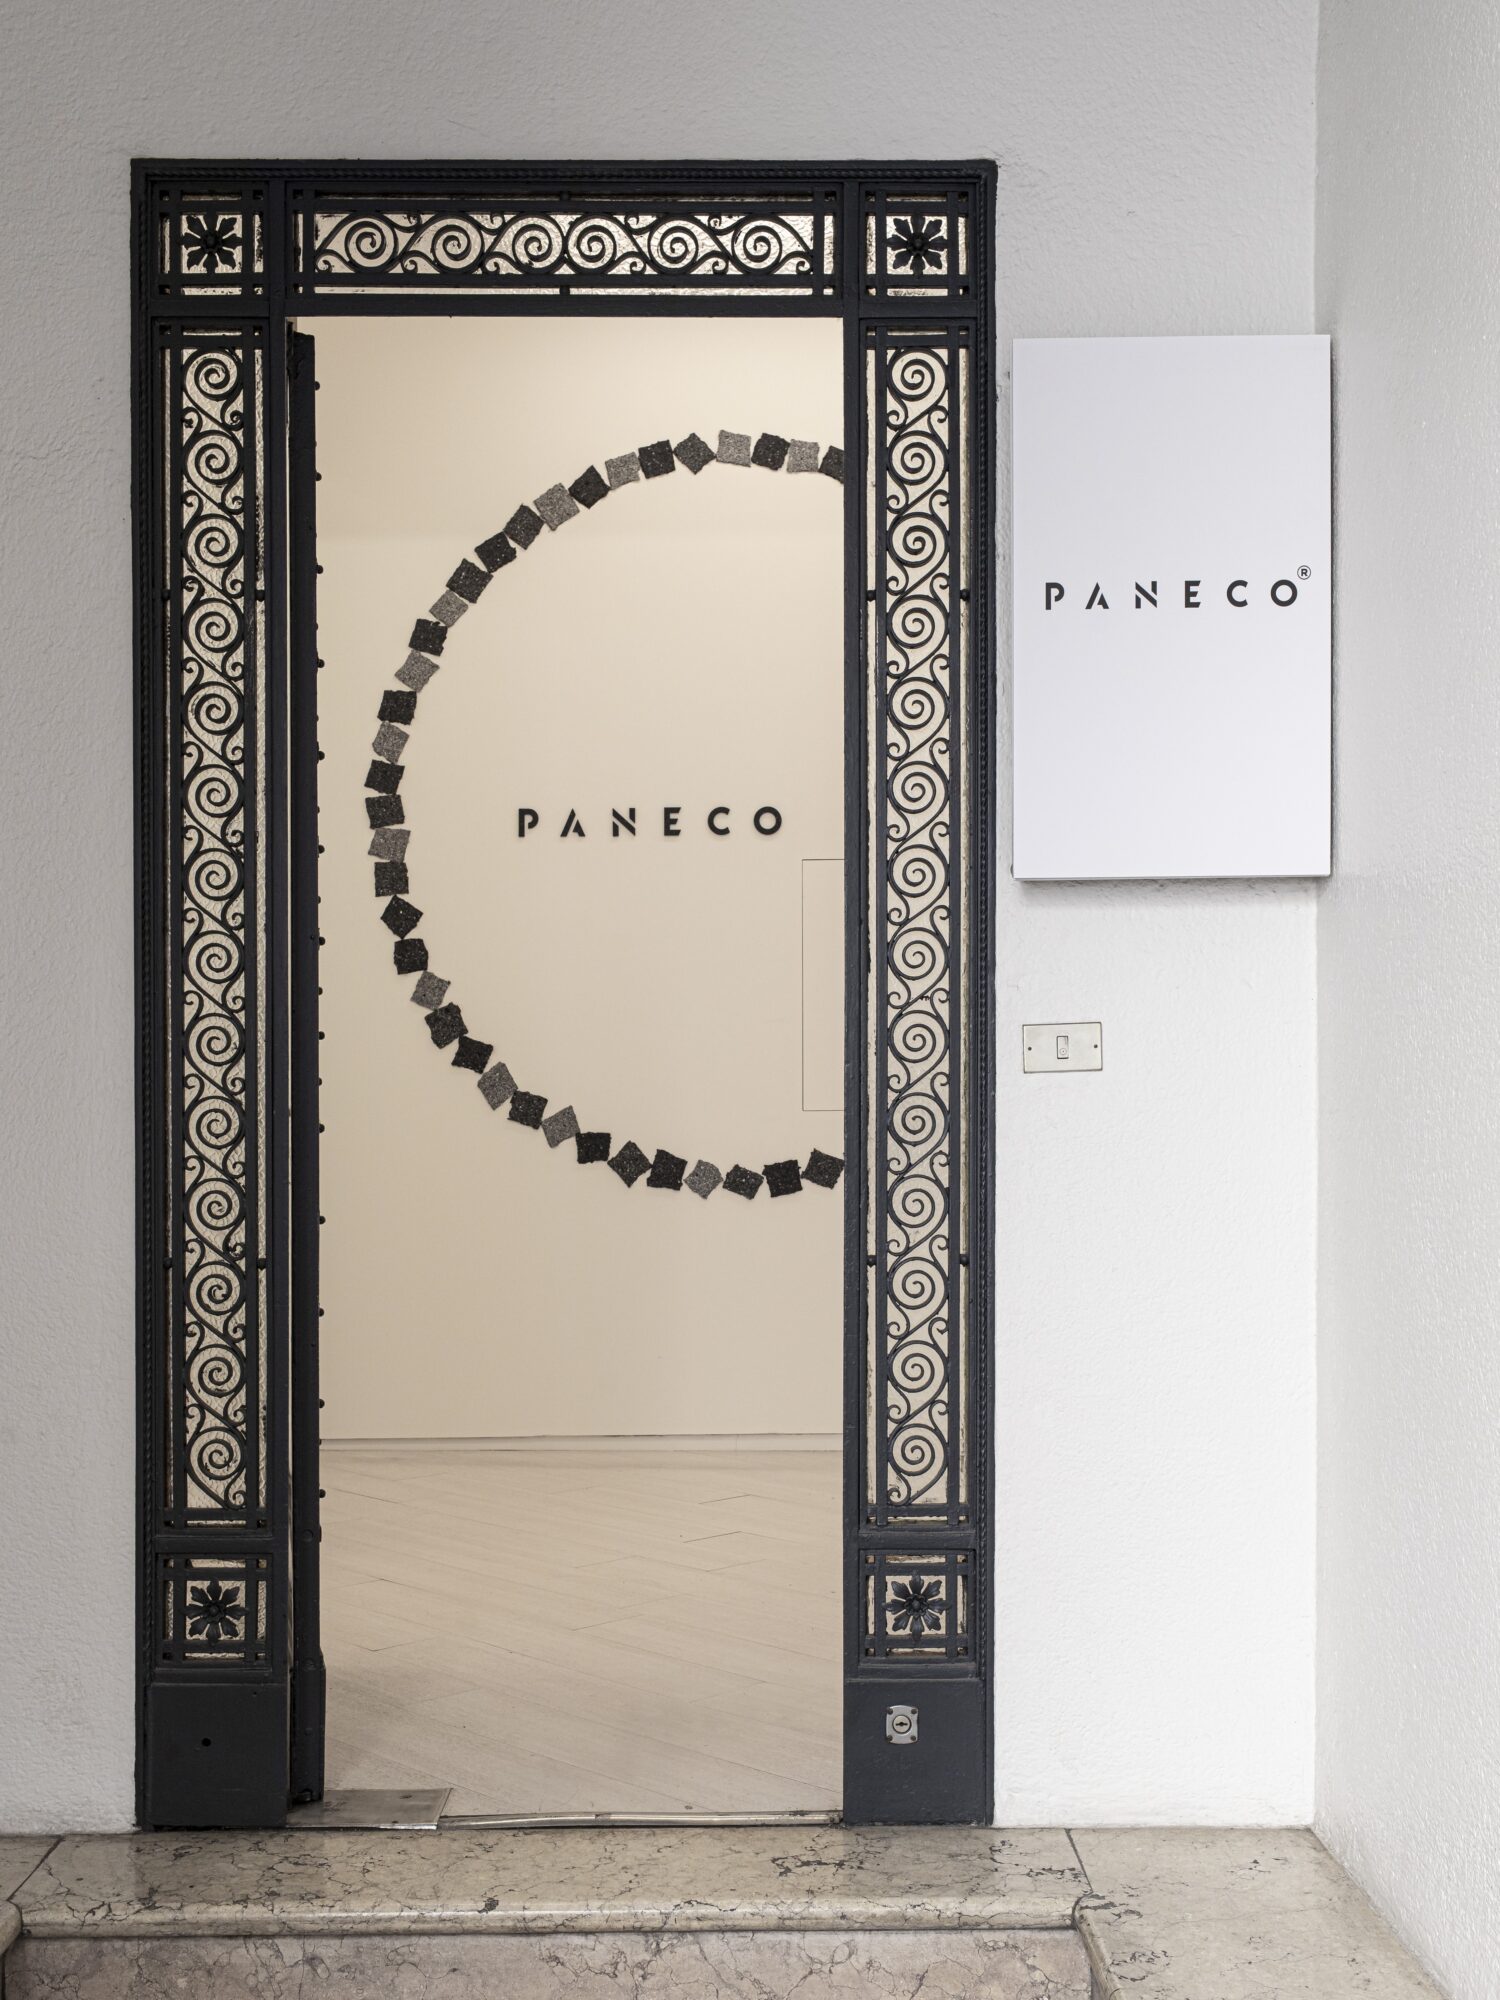 PANECO Milan design week 2022